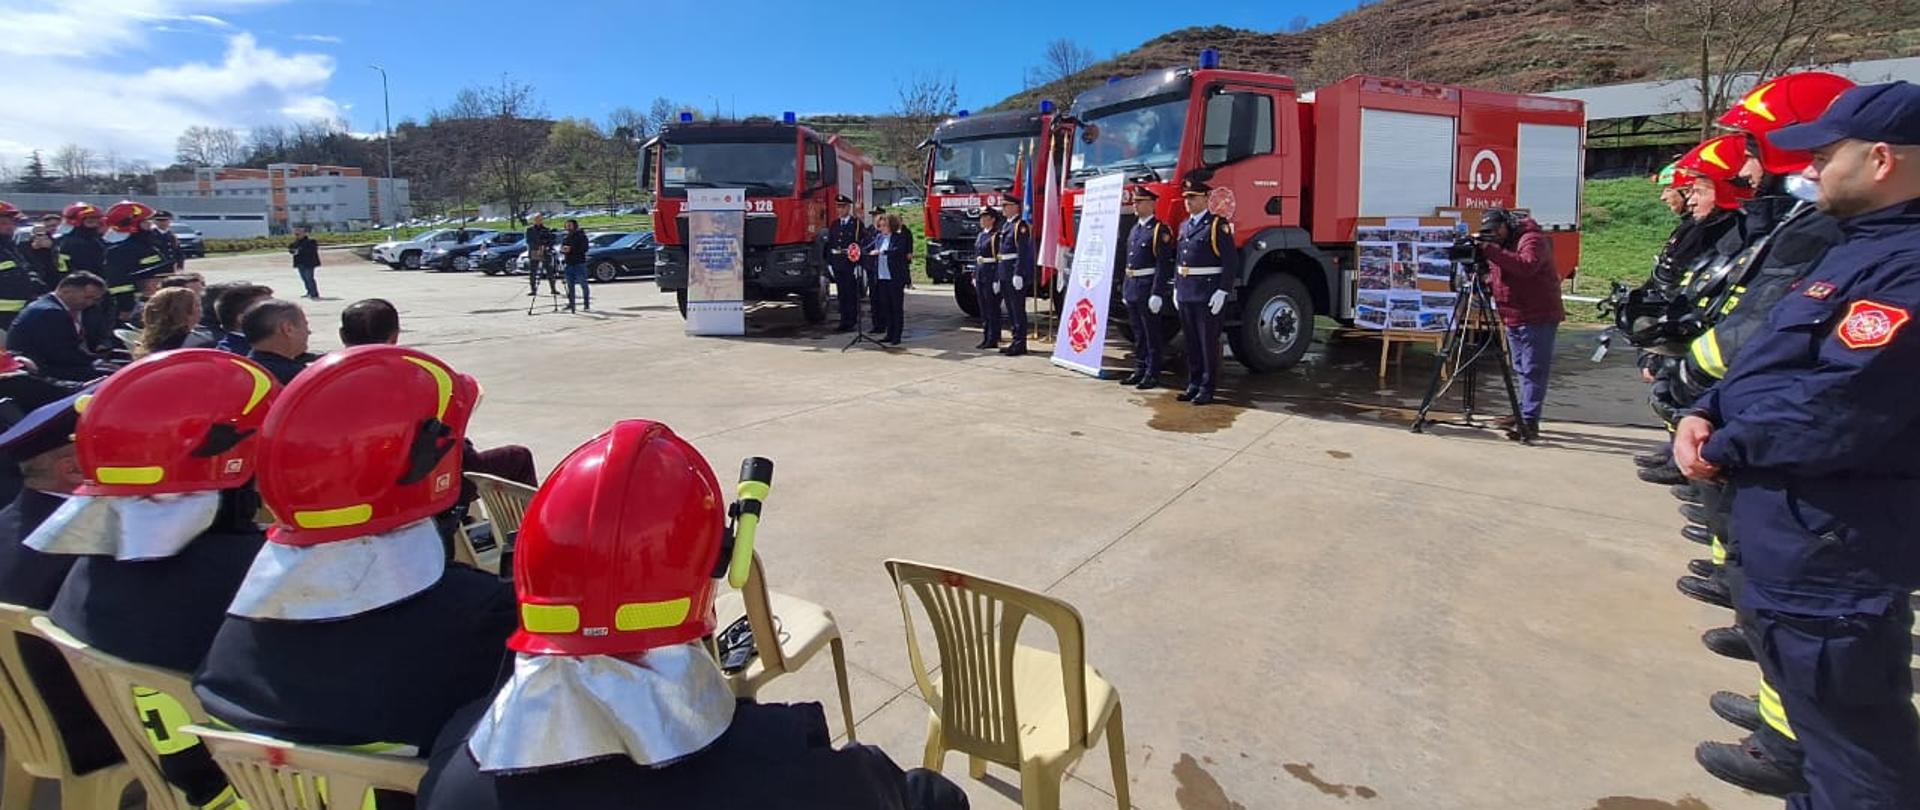 Ceremonia oficjalnego przekazania wozów strażackich dla albańskich gmin Lezhë, Fier i Pogradec.